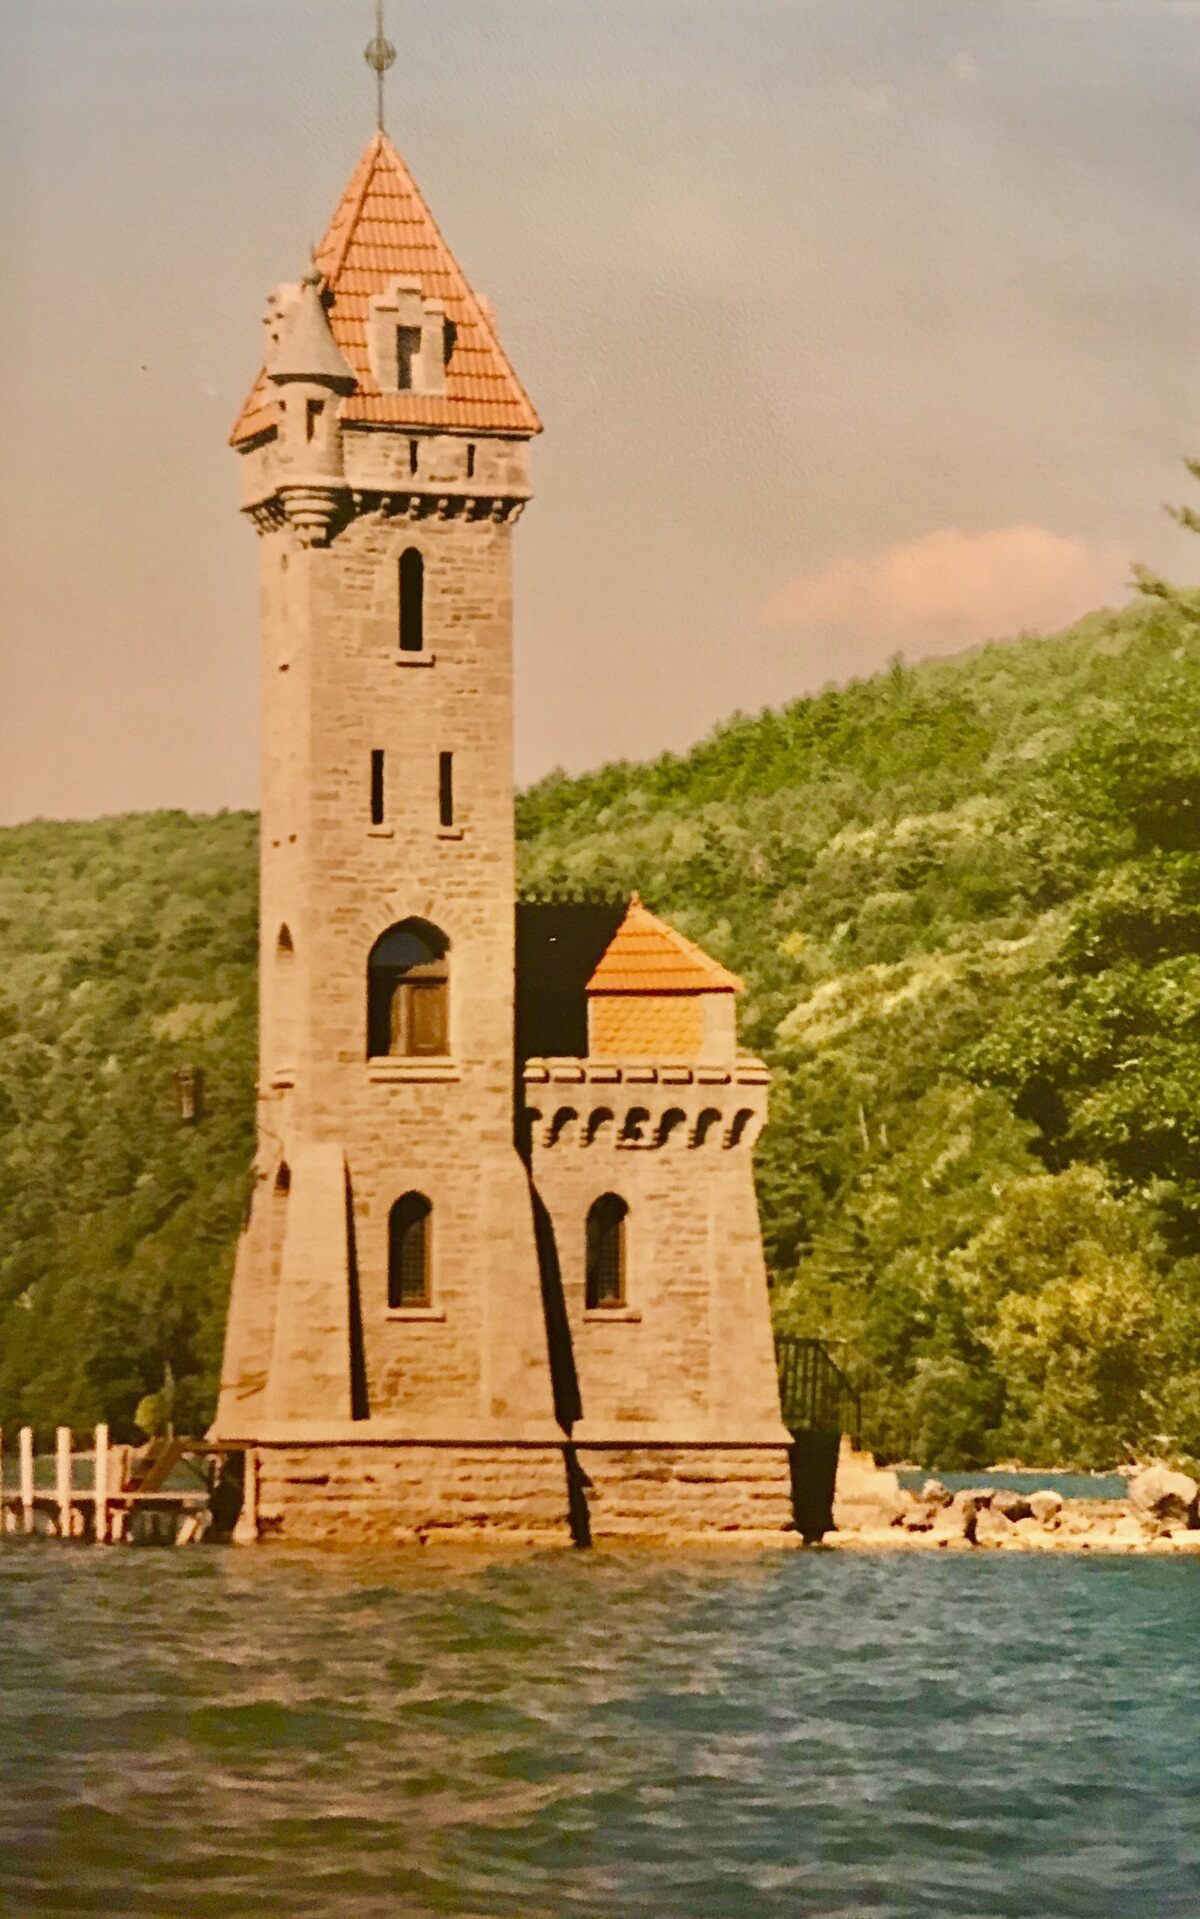 Башня Кингфишер: где находится и что посмотреть рядом